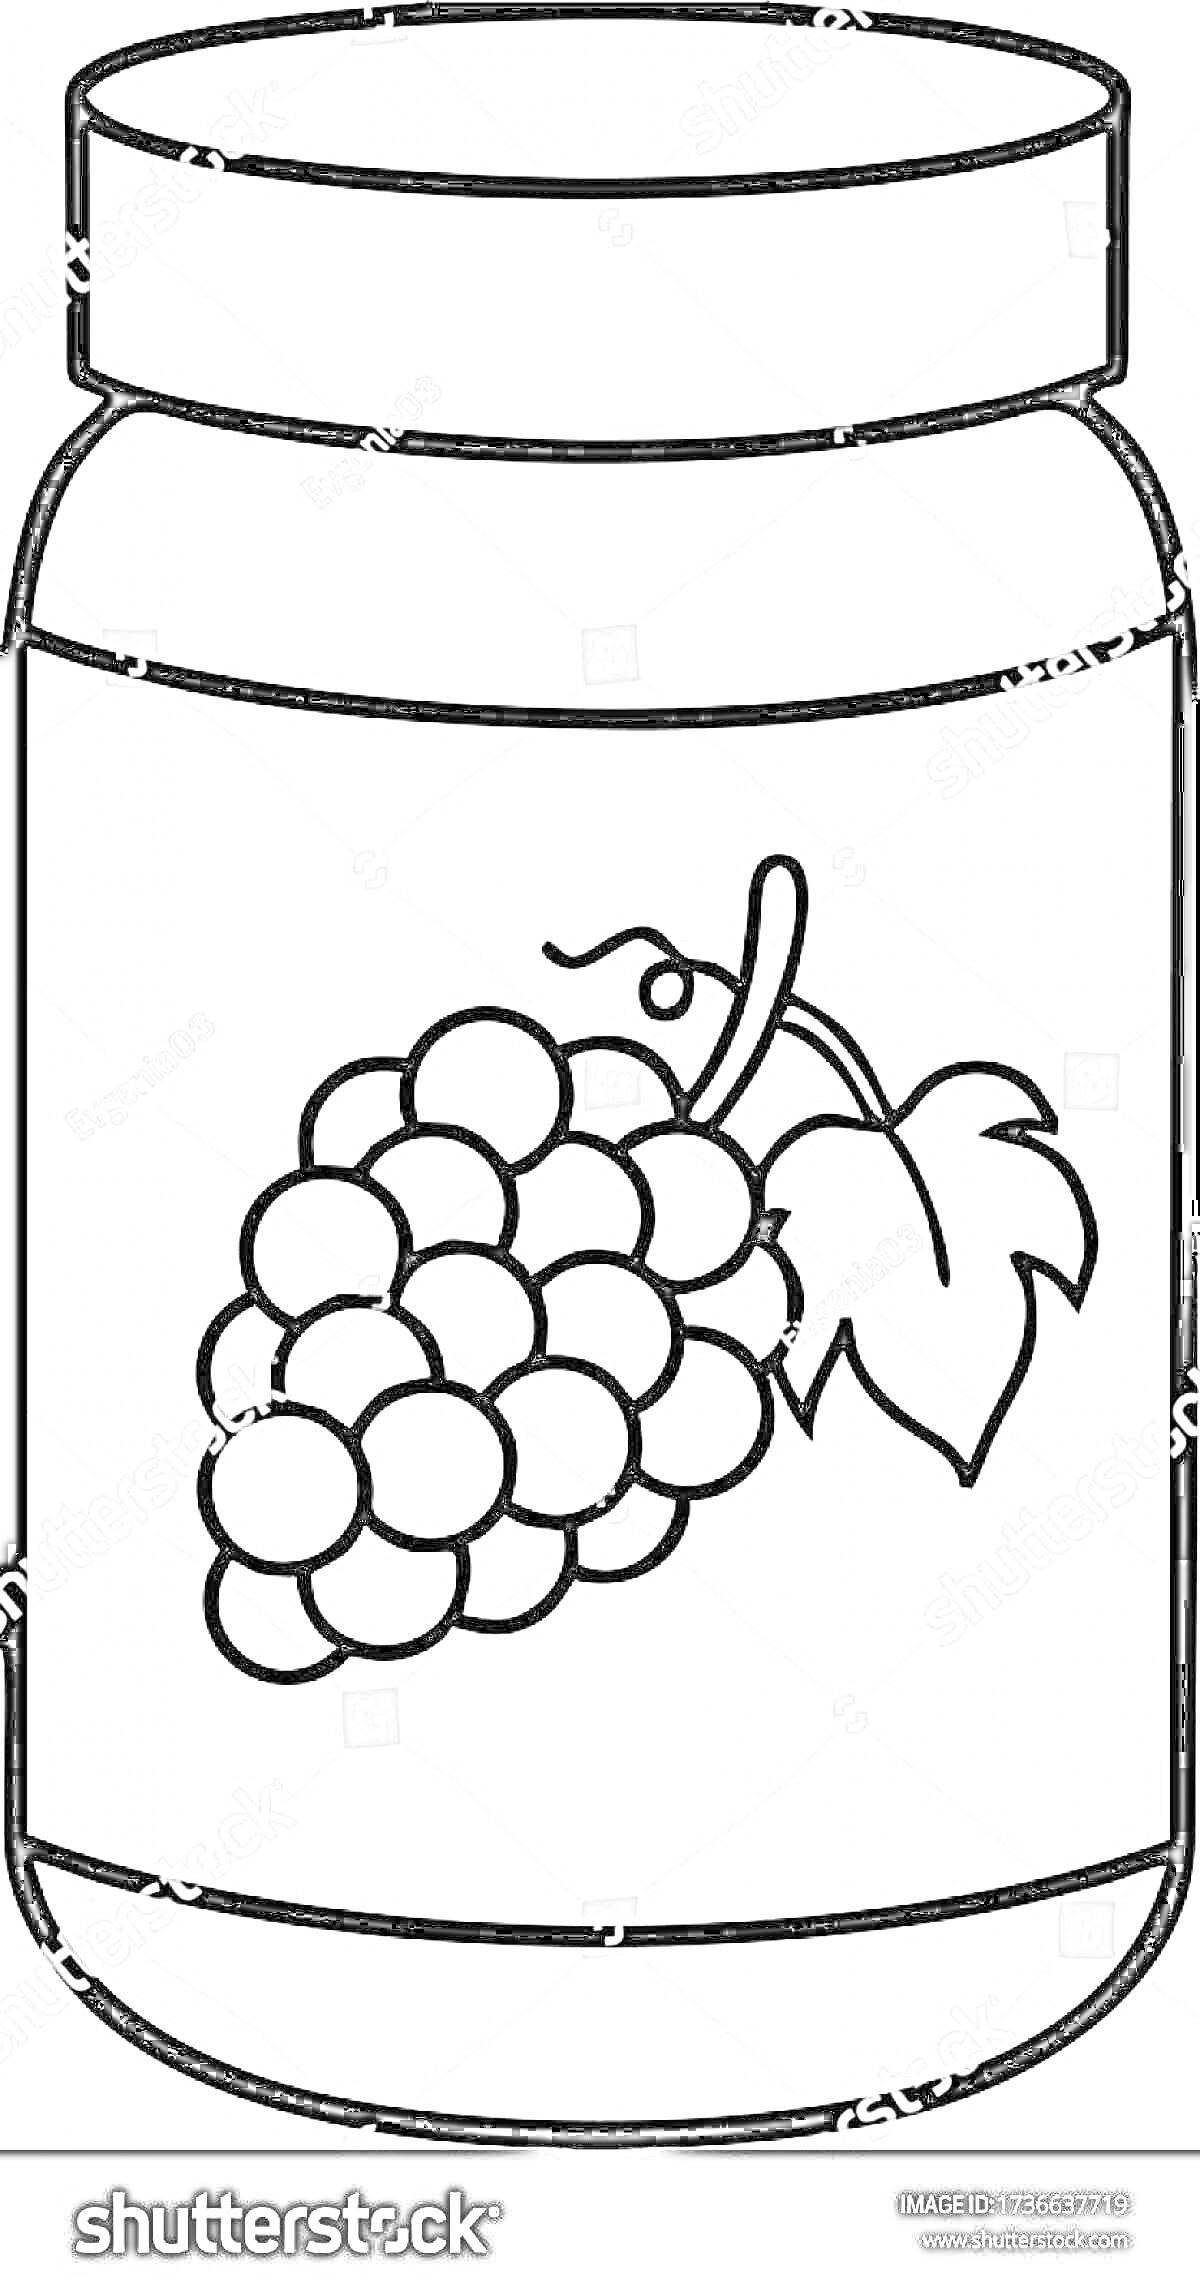 Банка с компотом и виноградом на этикетке